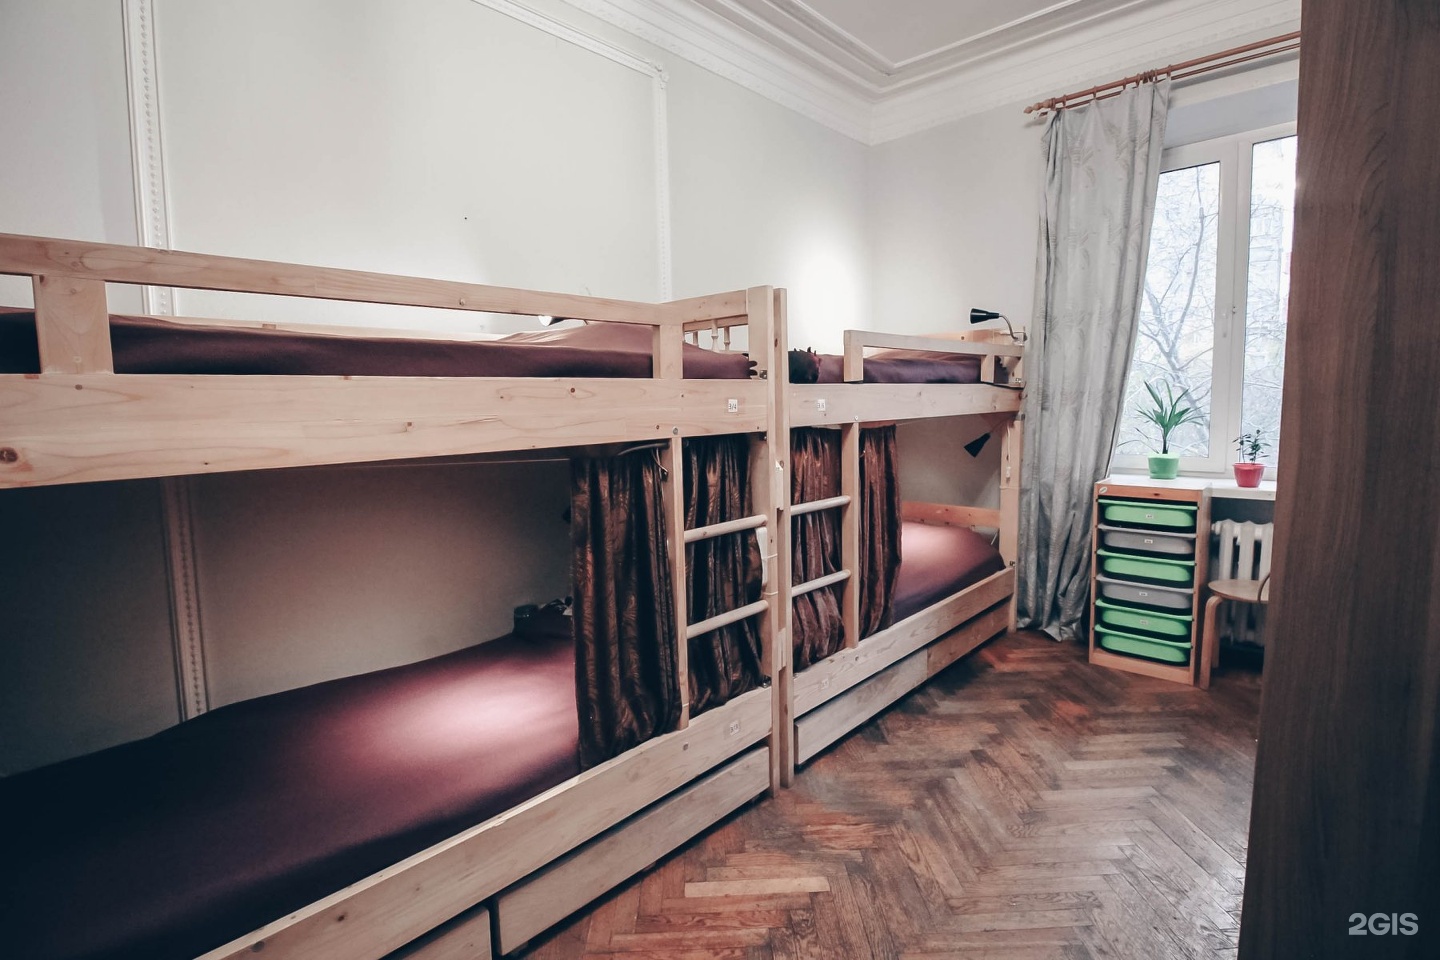 Общежитие в москве комната на 1 человека. Койка место в Москве недорого без посредников от хозяина в комнате. Москва не больше комнаты.